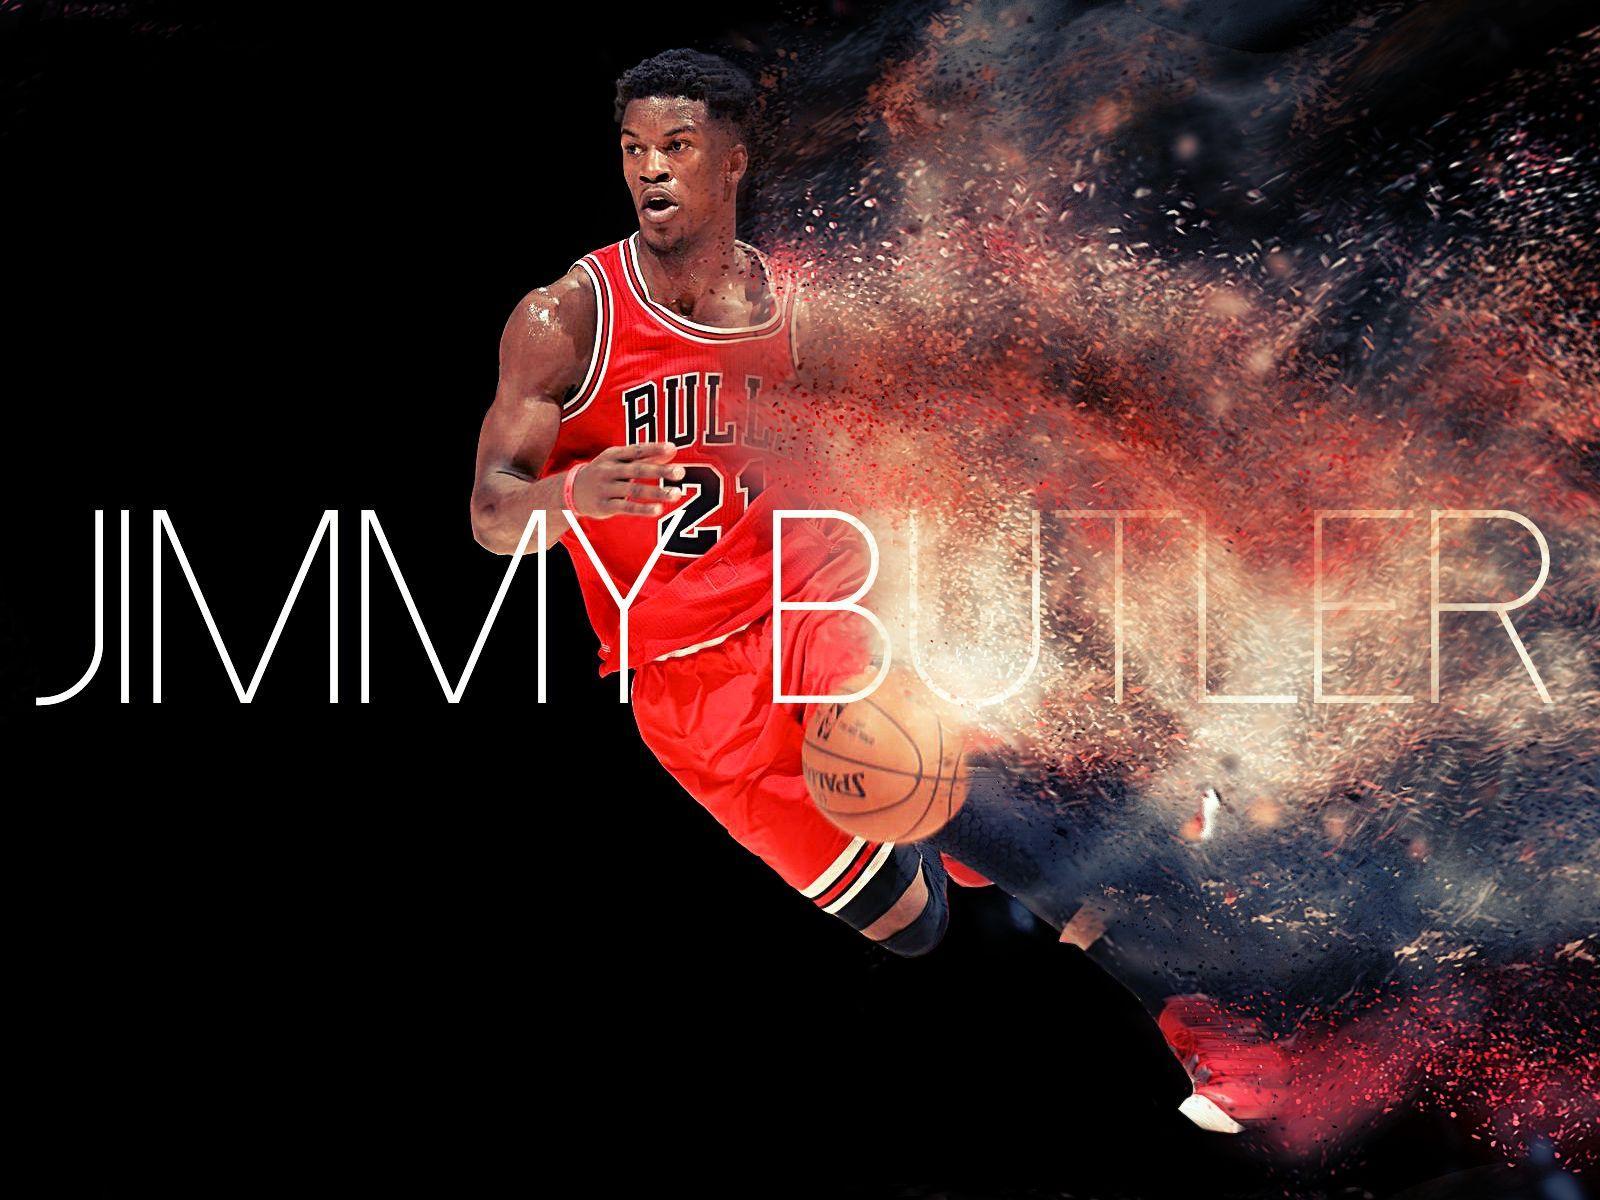 Jimmy Butler Player NBA wallpaper HD 2016 in Basketball